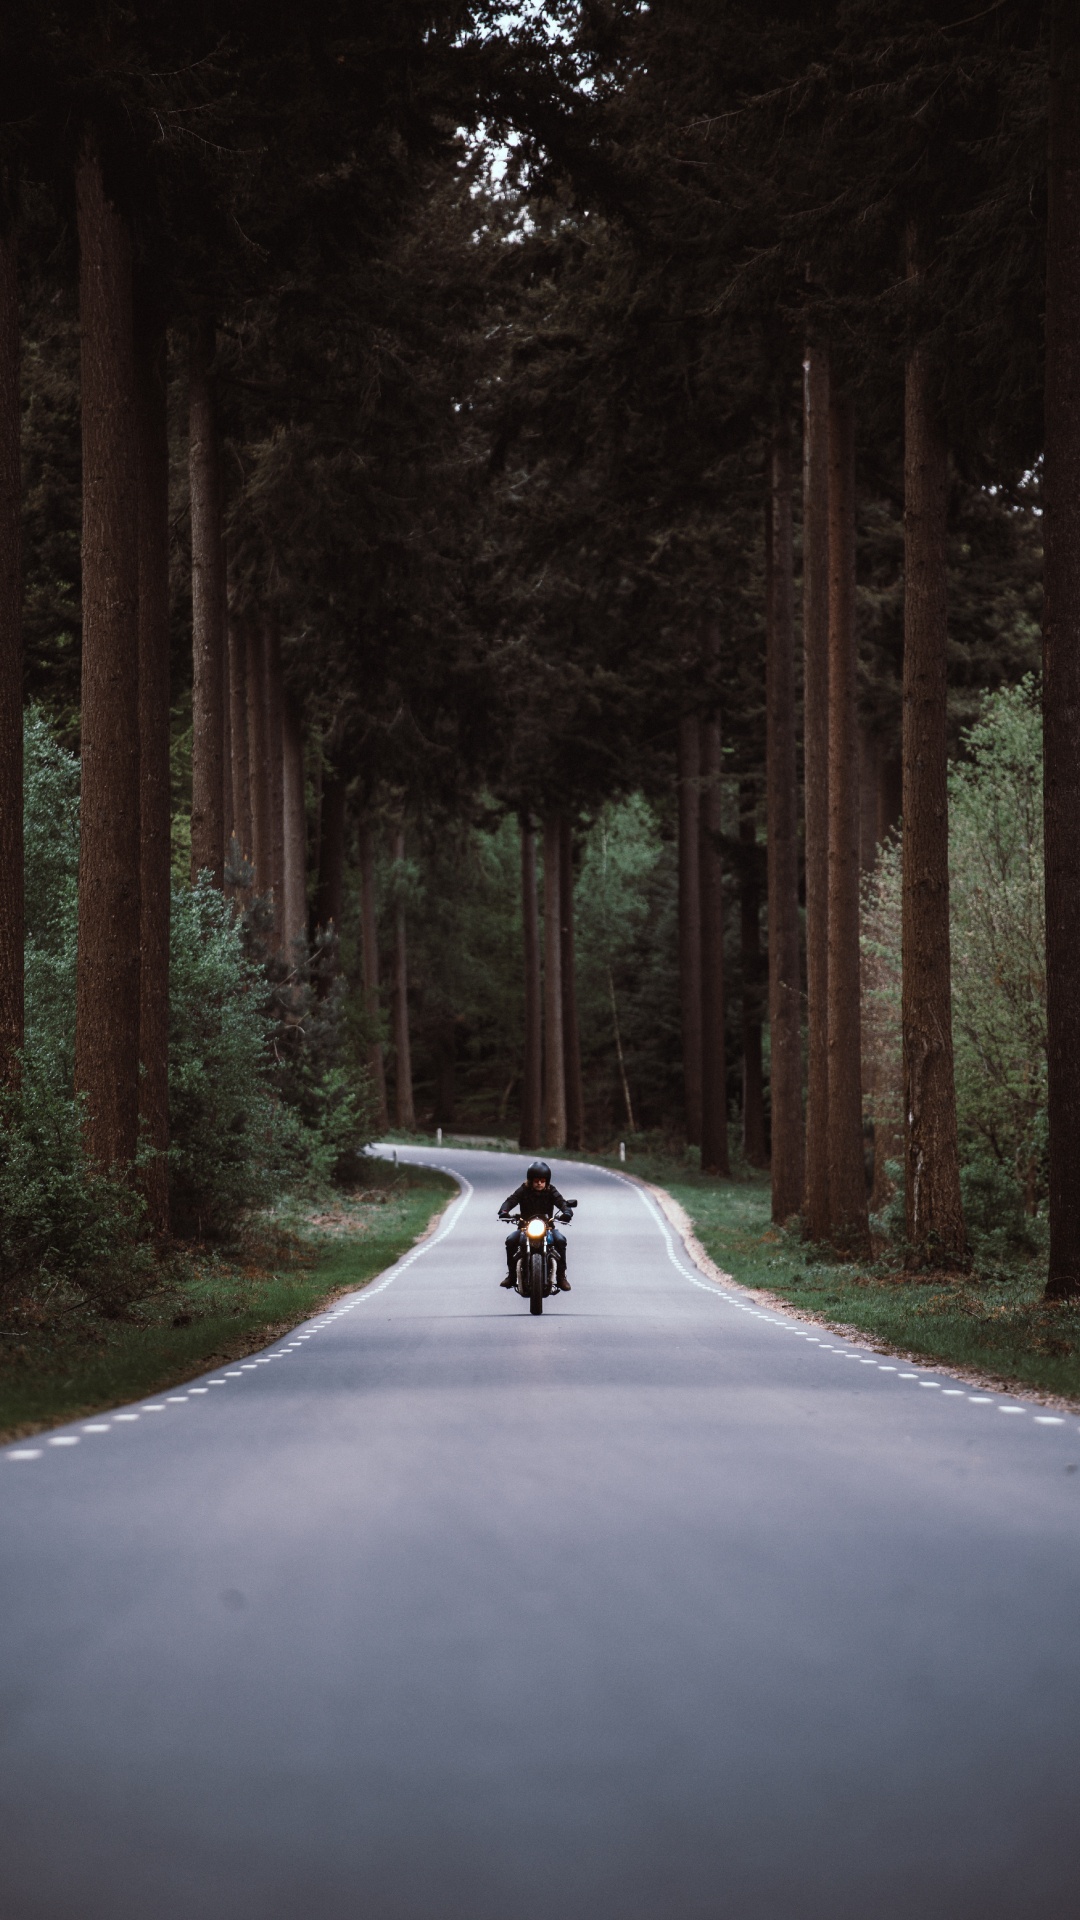 Personne à Moto Sur Route Entre Les Arbres Pendant la Journée. Wallpaper in 1080x1920 Resolution